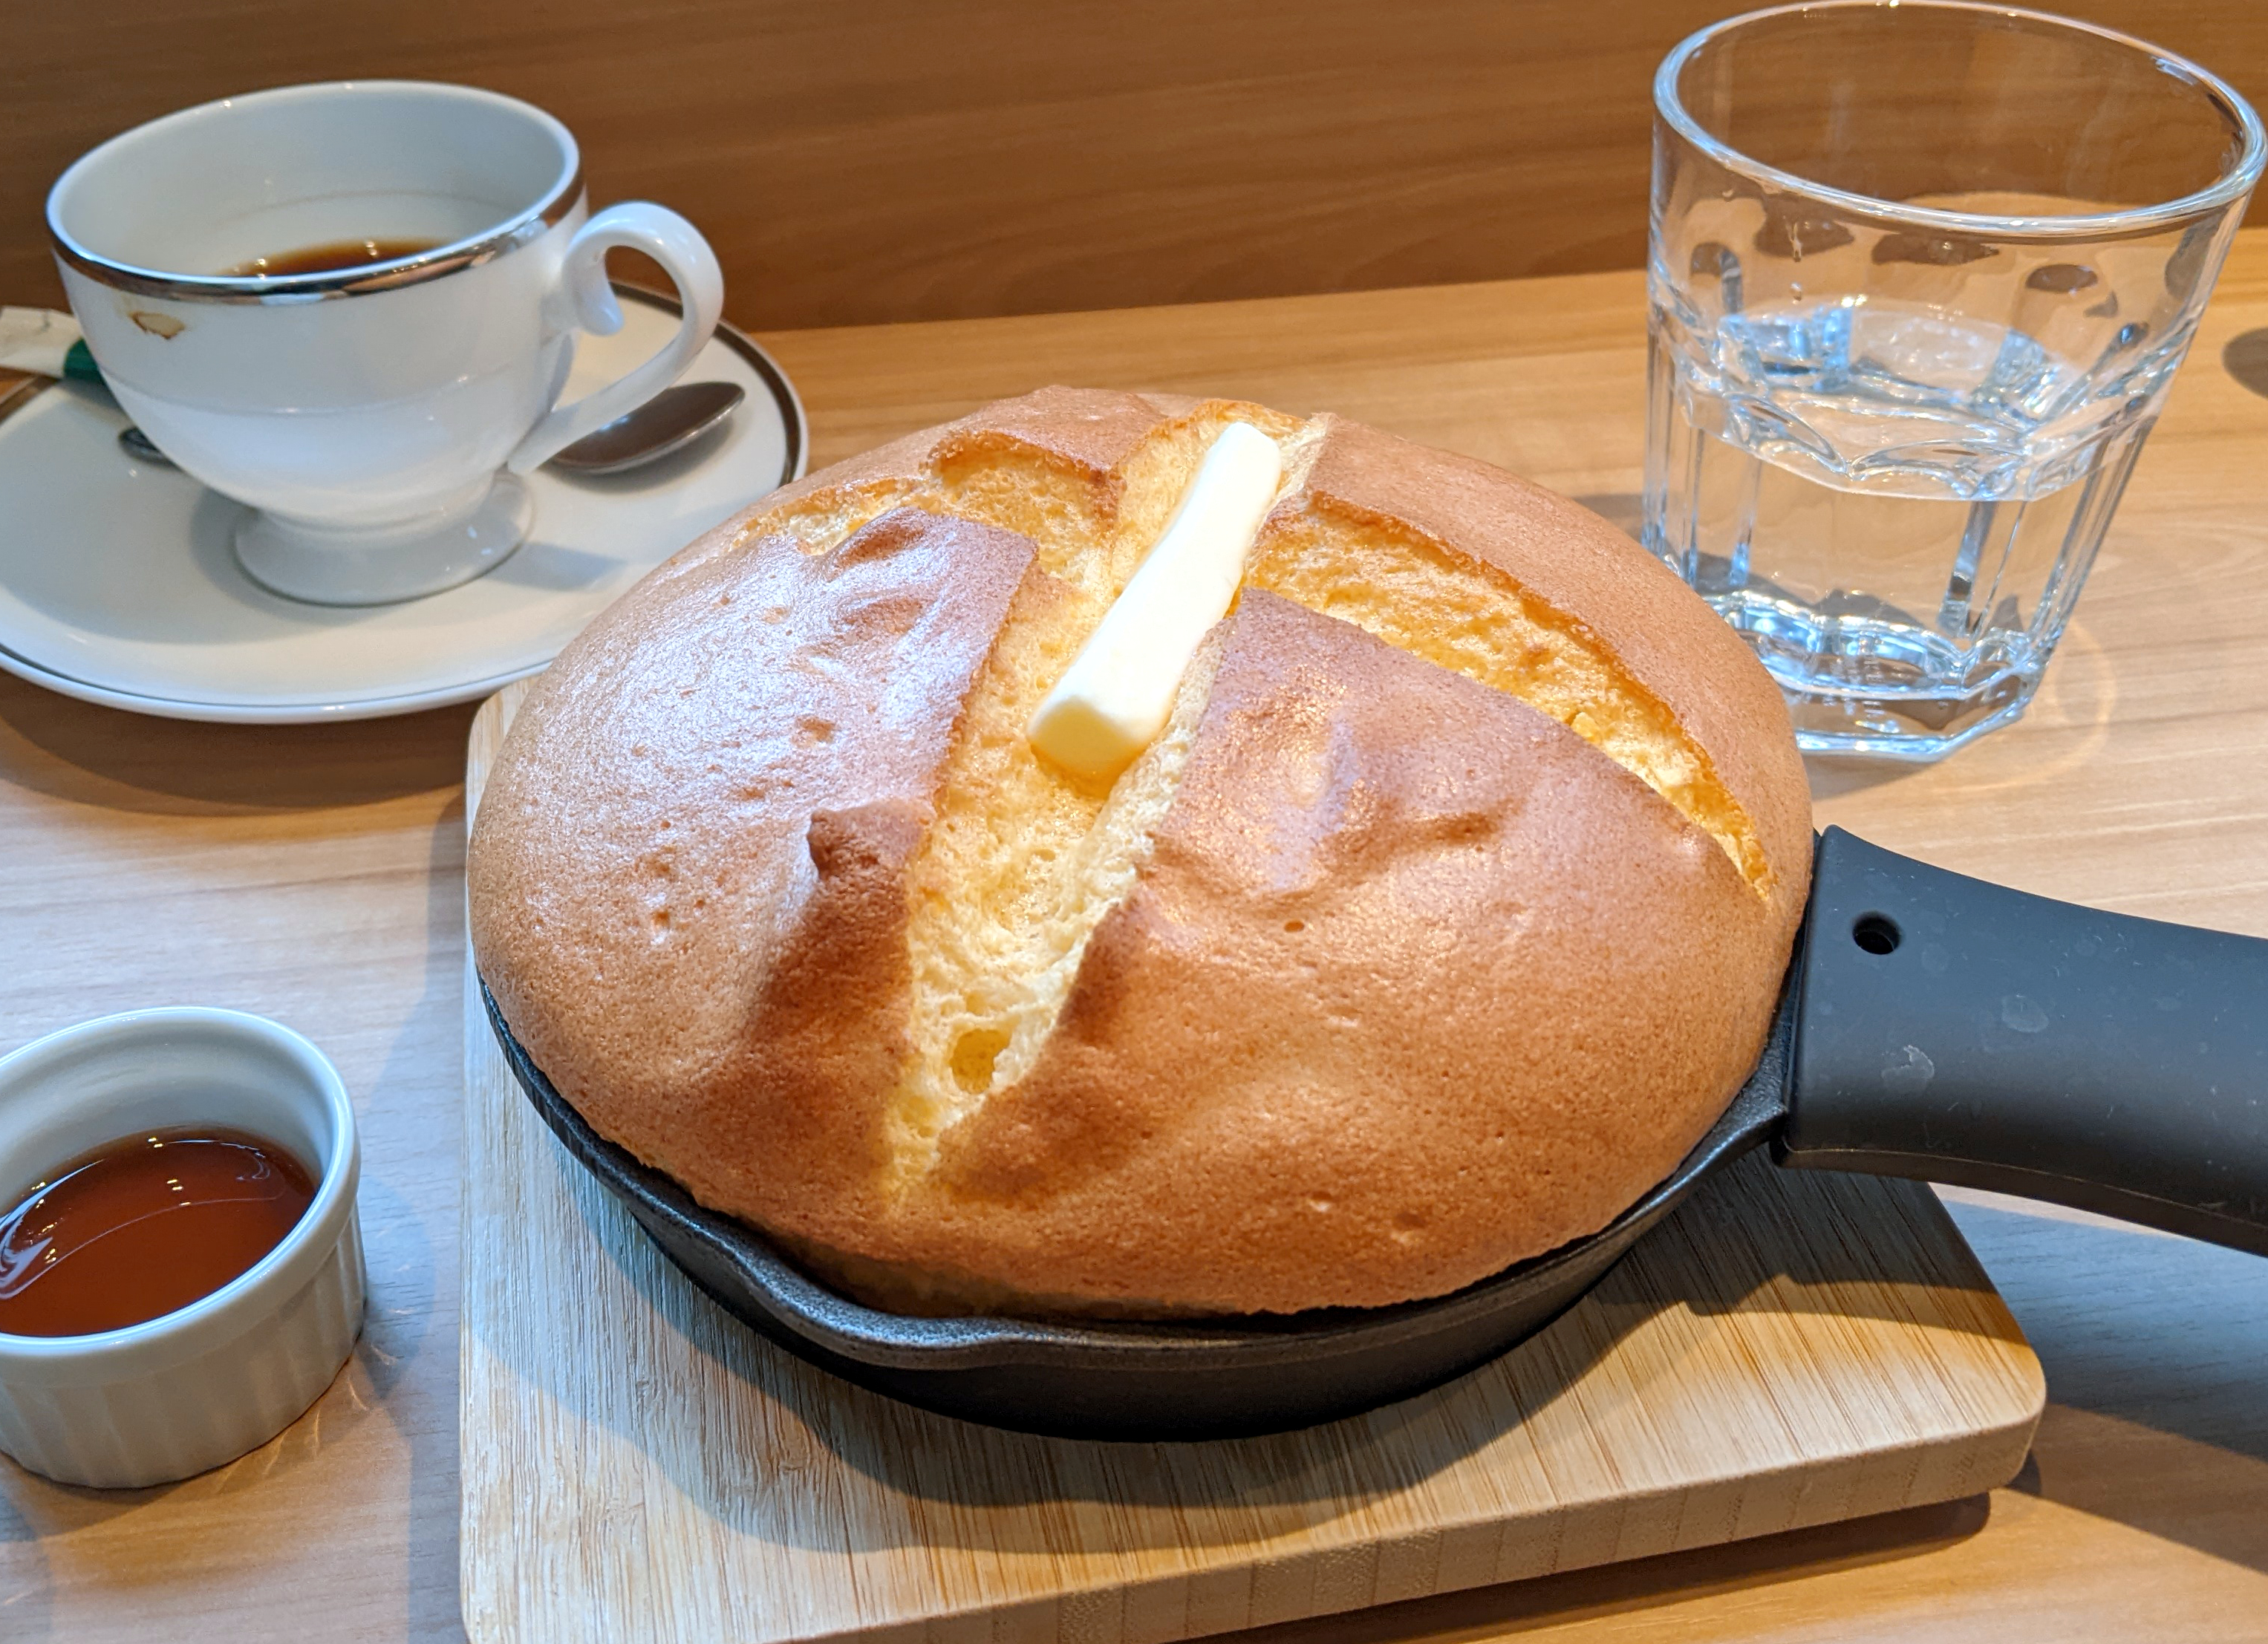 ドーミーイングループがカフェ業界に参戦 カフェオアシス のパンケーキが劇的に美味い 東京 中野坂上 ロケットニュース24